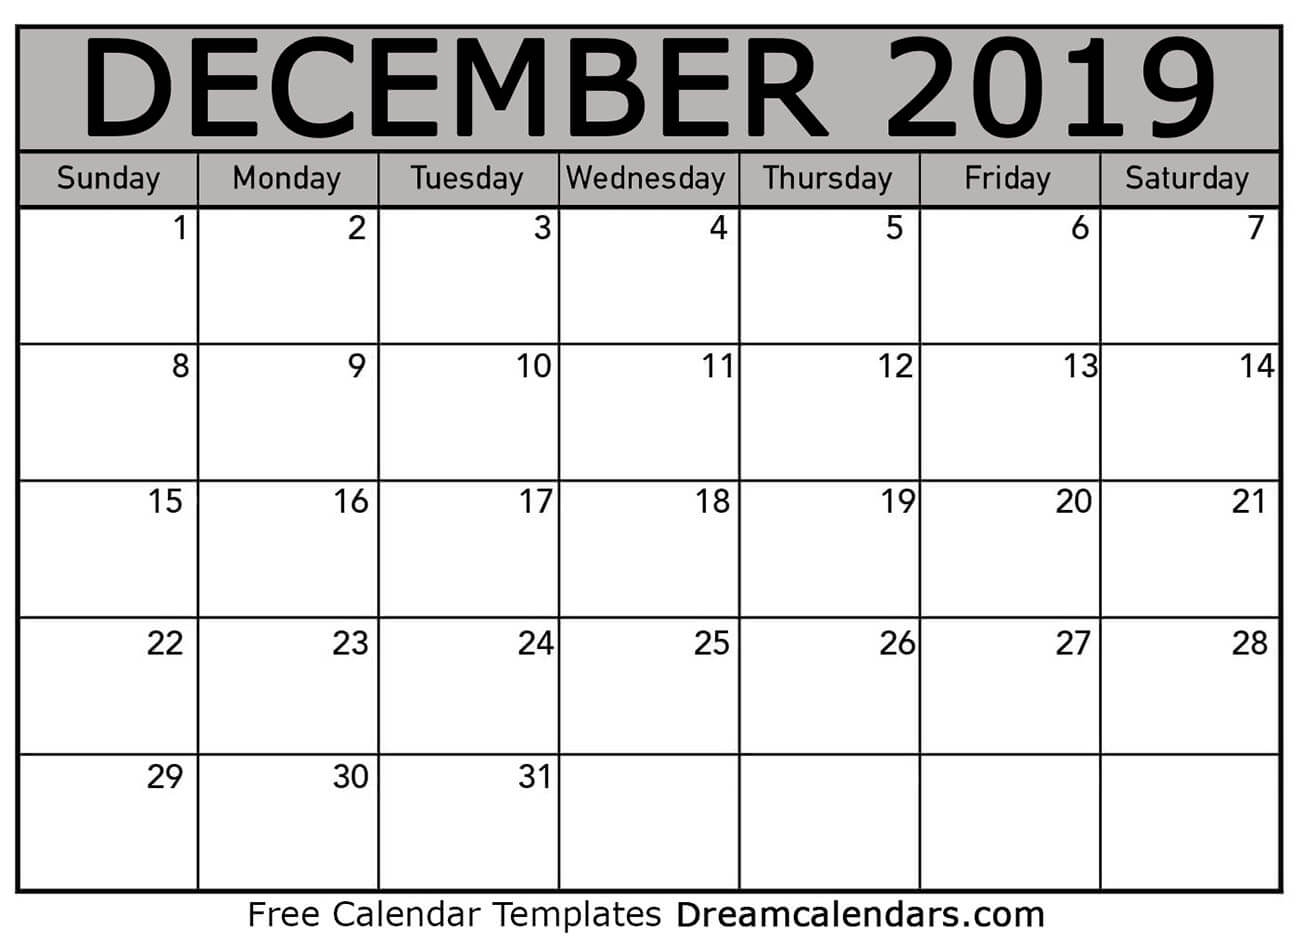 Dream Calendars - Make Your Calendar Template Blog: February